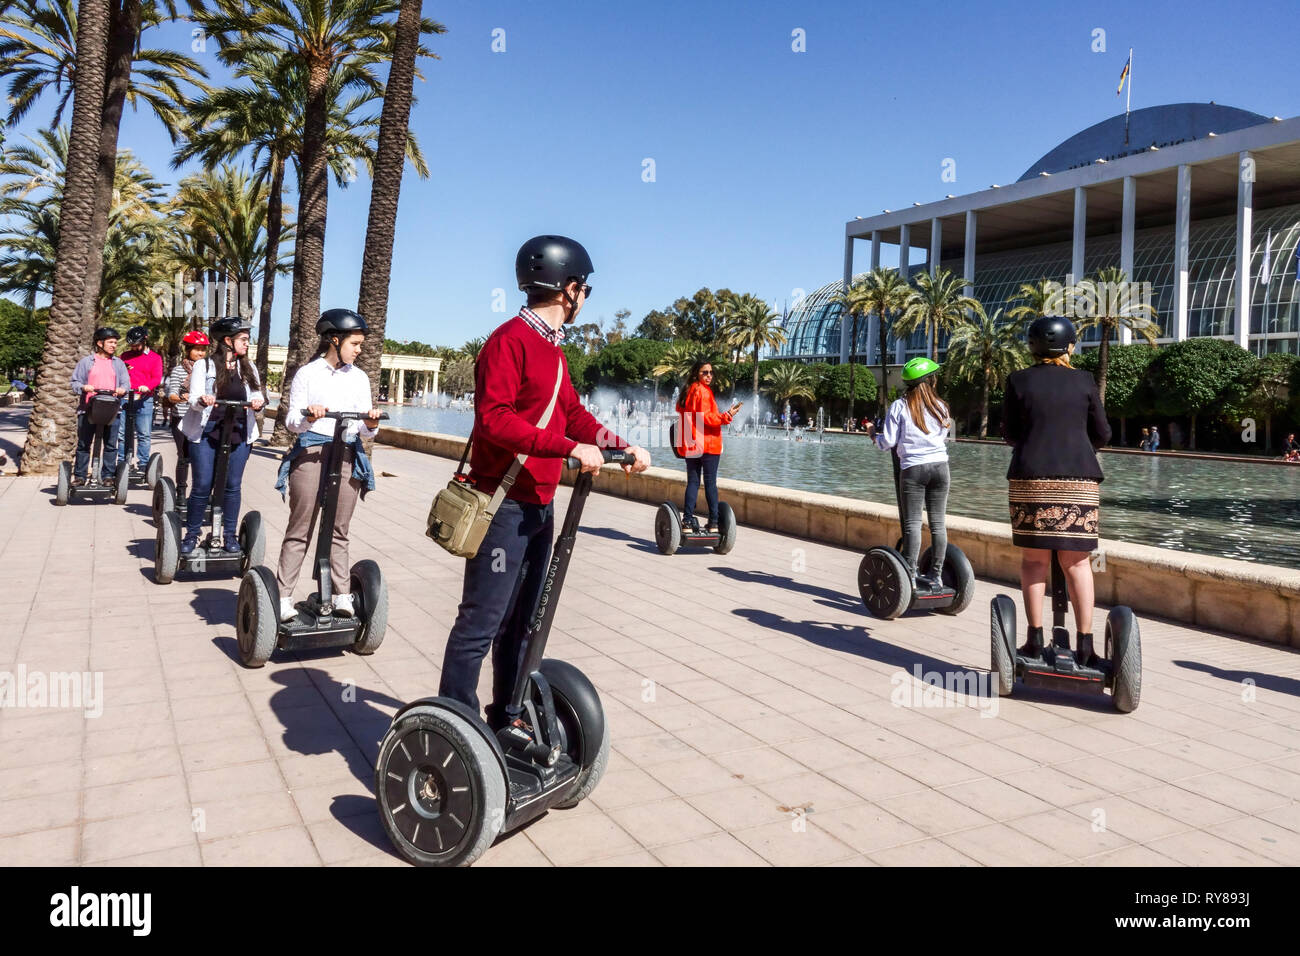 Valencia Turia Park, Menschen auf segway, Platz vor dem Musikpalast, Spanien Tourismus Stockfoto